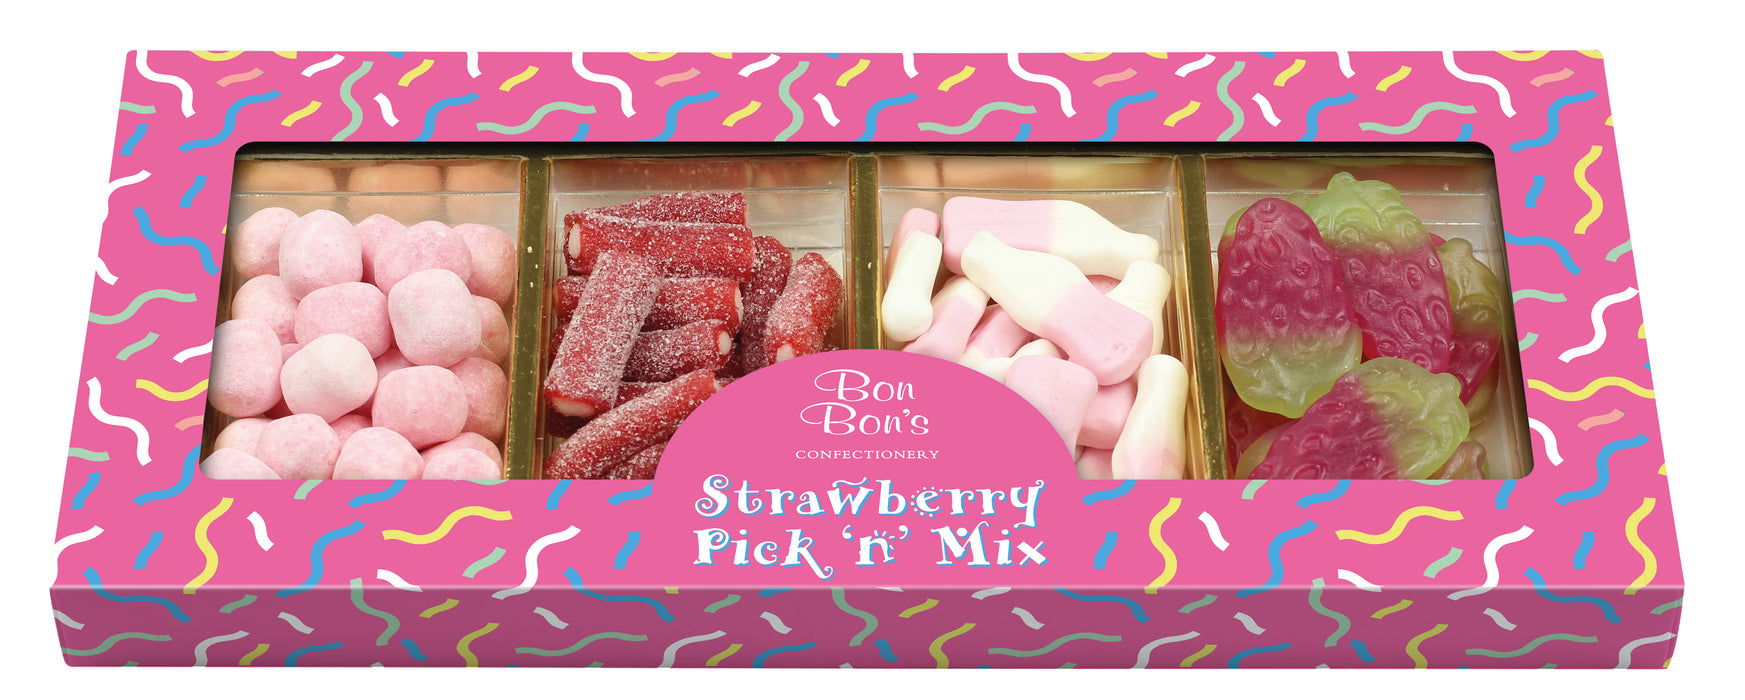 Bon Bon's Strawberry Pick 'N' Mix Box